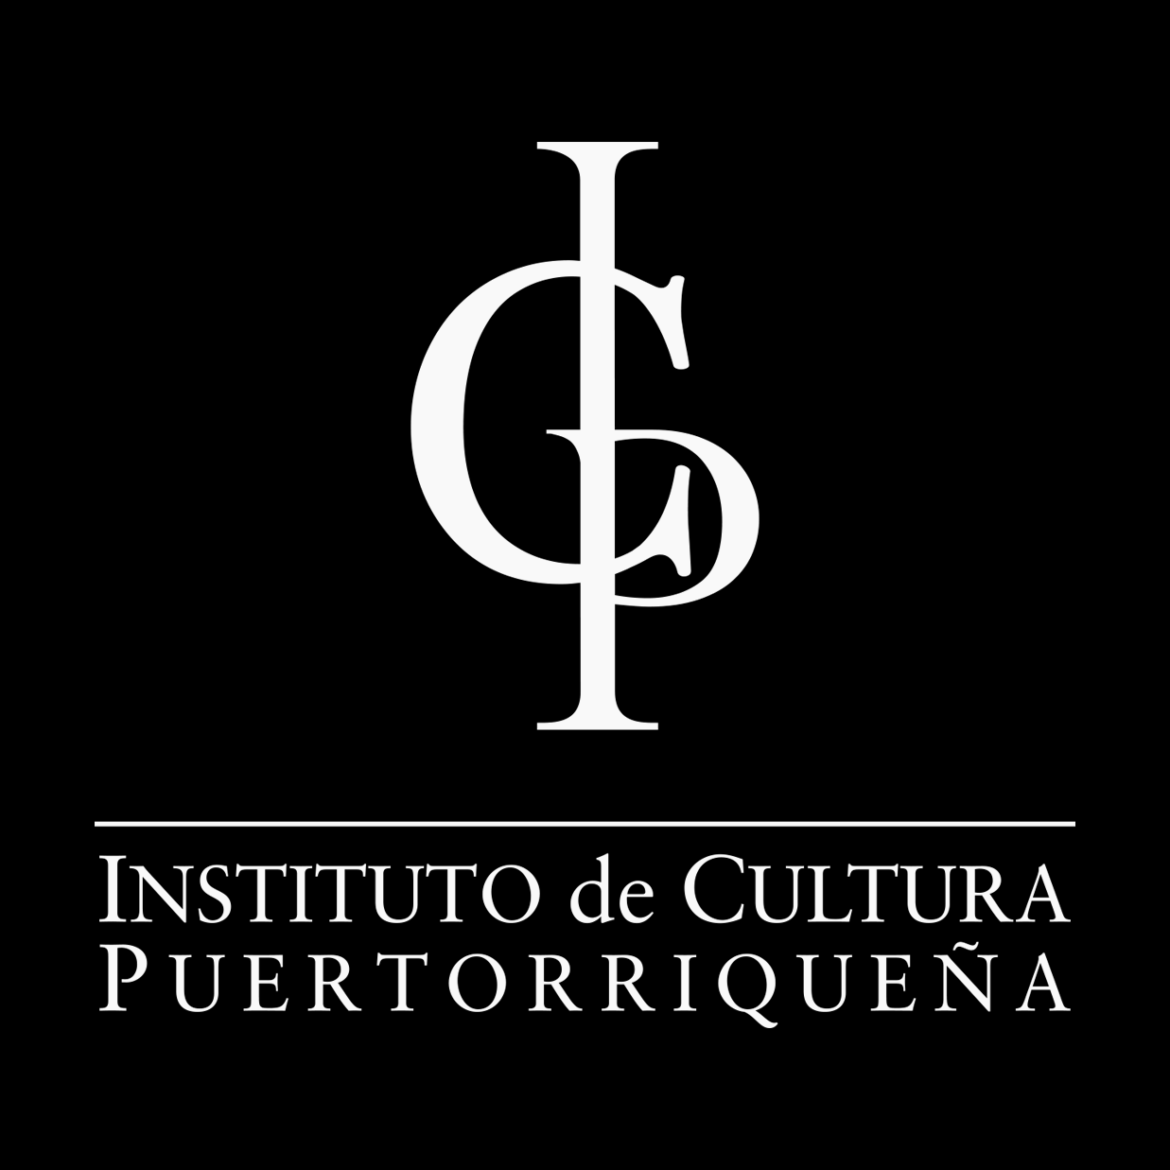 Instituto de Cultura Puertorriqueña propone legislación para impulsar los Distritos Creativos